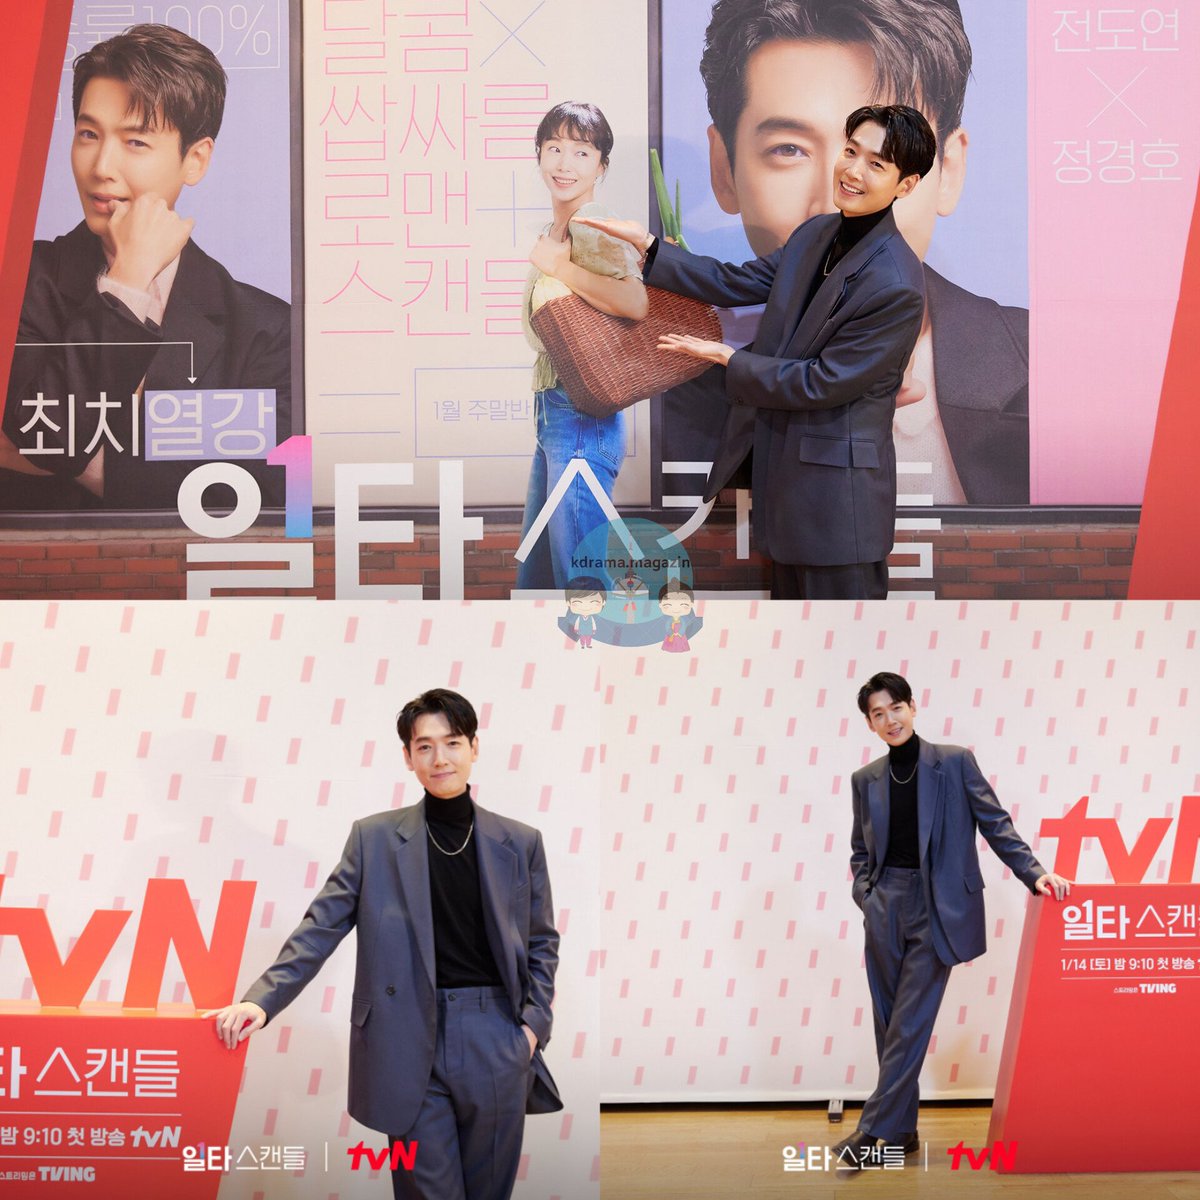 tvN Draması #CrashCourseInRomance İçin Basın Toplantısı Düzenlendi.

🗓14 Ocak'ta yayınlanacak.

#JeonDoYeon #JungKyungHo #ShinJaeHa #RohYoonSeo #OneShotScandal #IltaScandal

👉 #kdramamagazinbasıntoplantıları